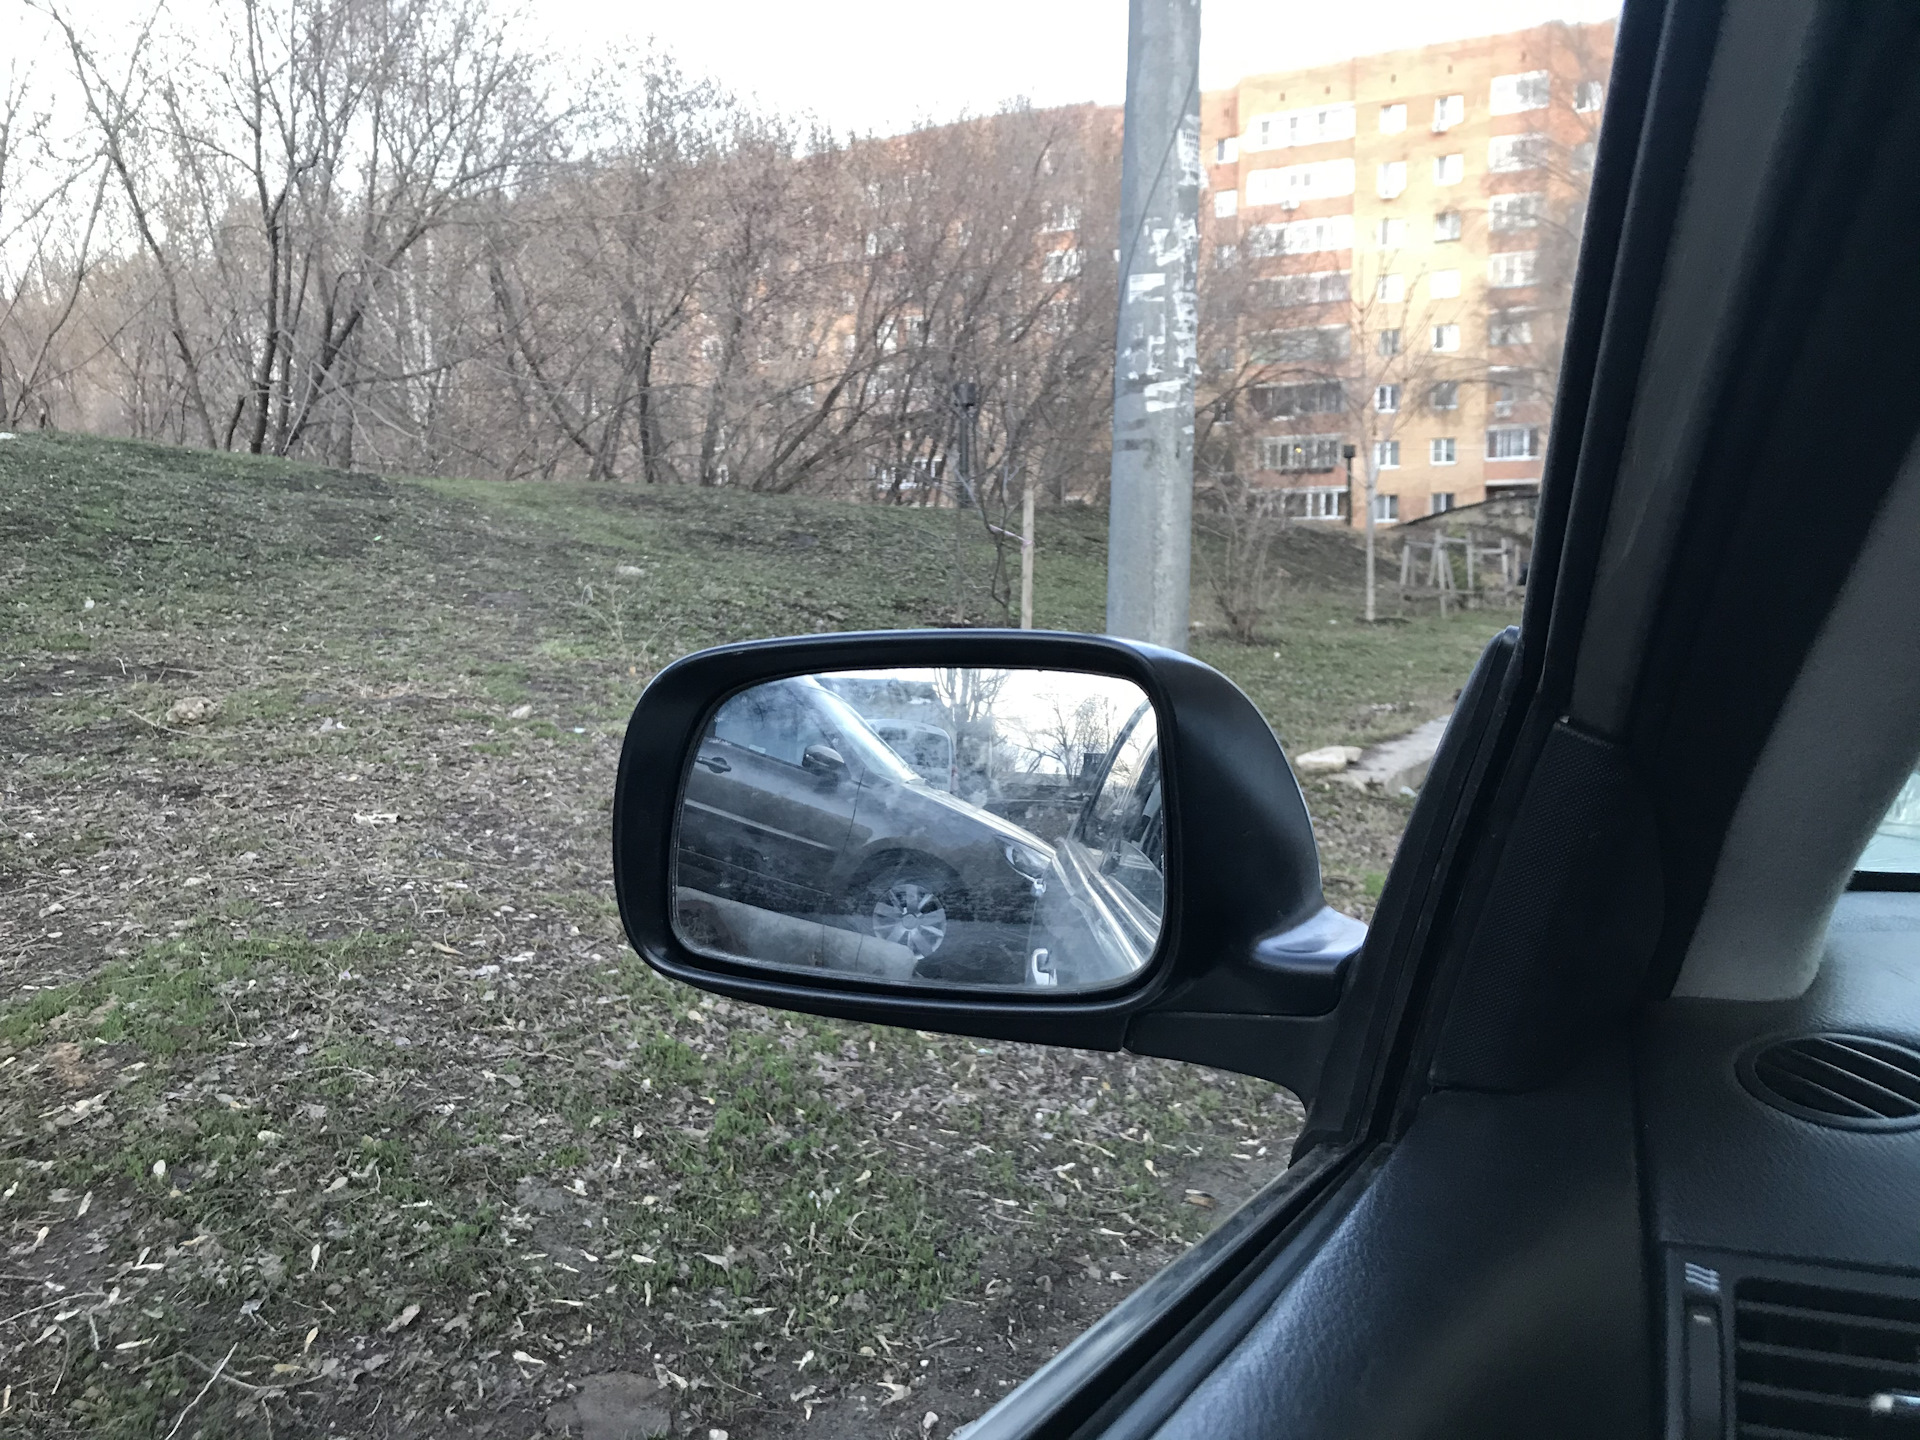 Зеркало Toyota Corolla 120. Зеркального элемента зеркала Королла 120. Водительское зеркало в салоне. Зеркало Toyota Corolla 120 заднее.